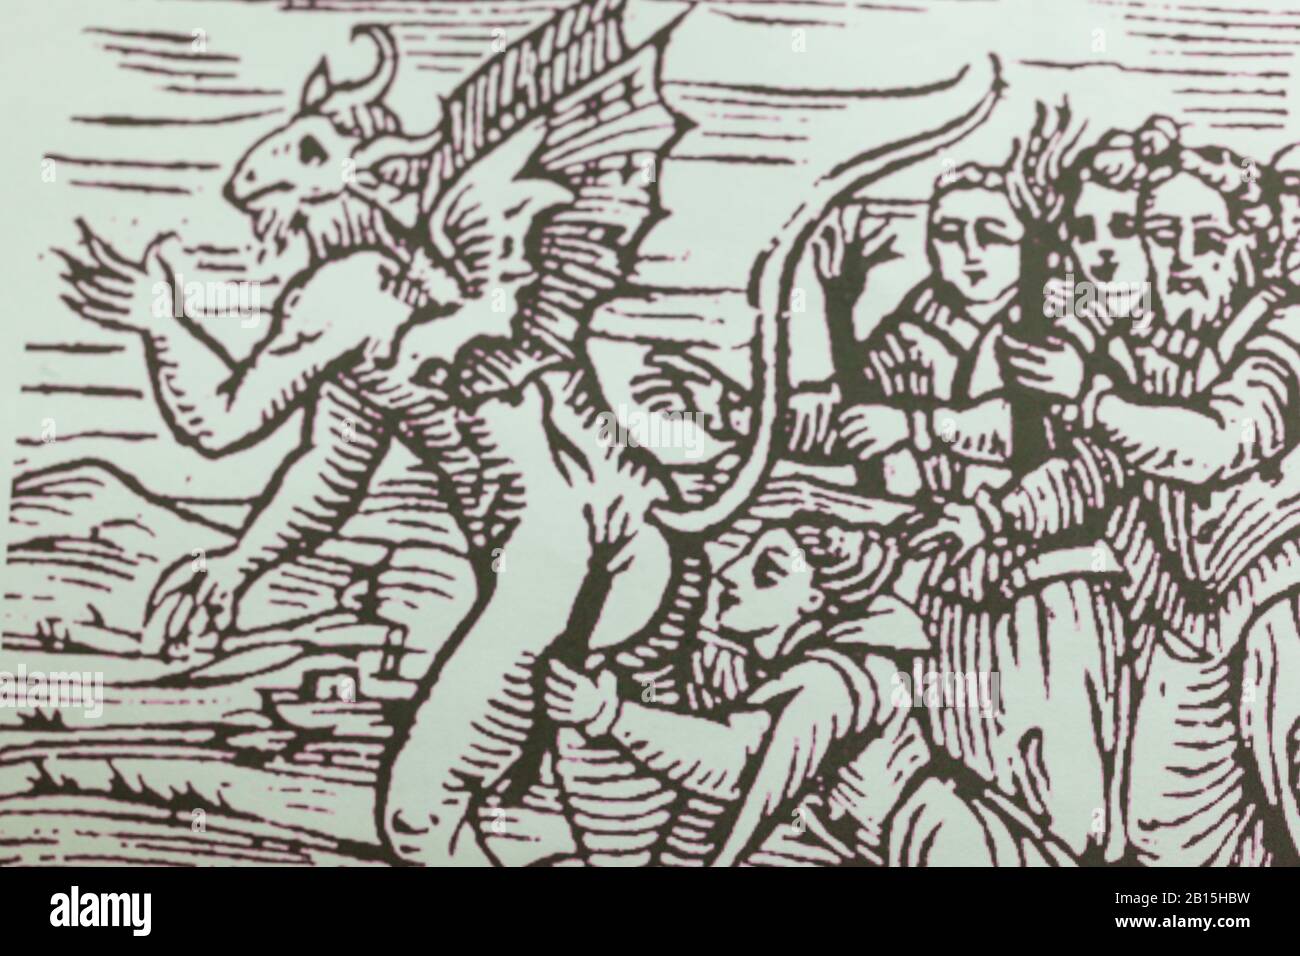 Illustration imprimée du XVe siècle Malleus Maleficarum 'The Witch Hammer' le manuel de chasse aux sorcières de la période médiévale. Copyspace Banque D'Images